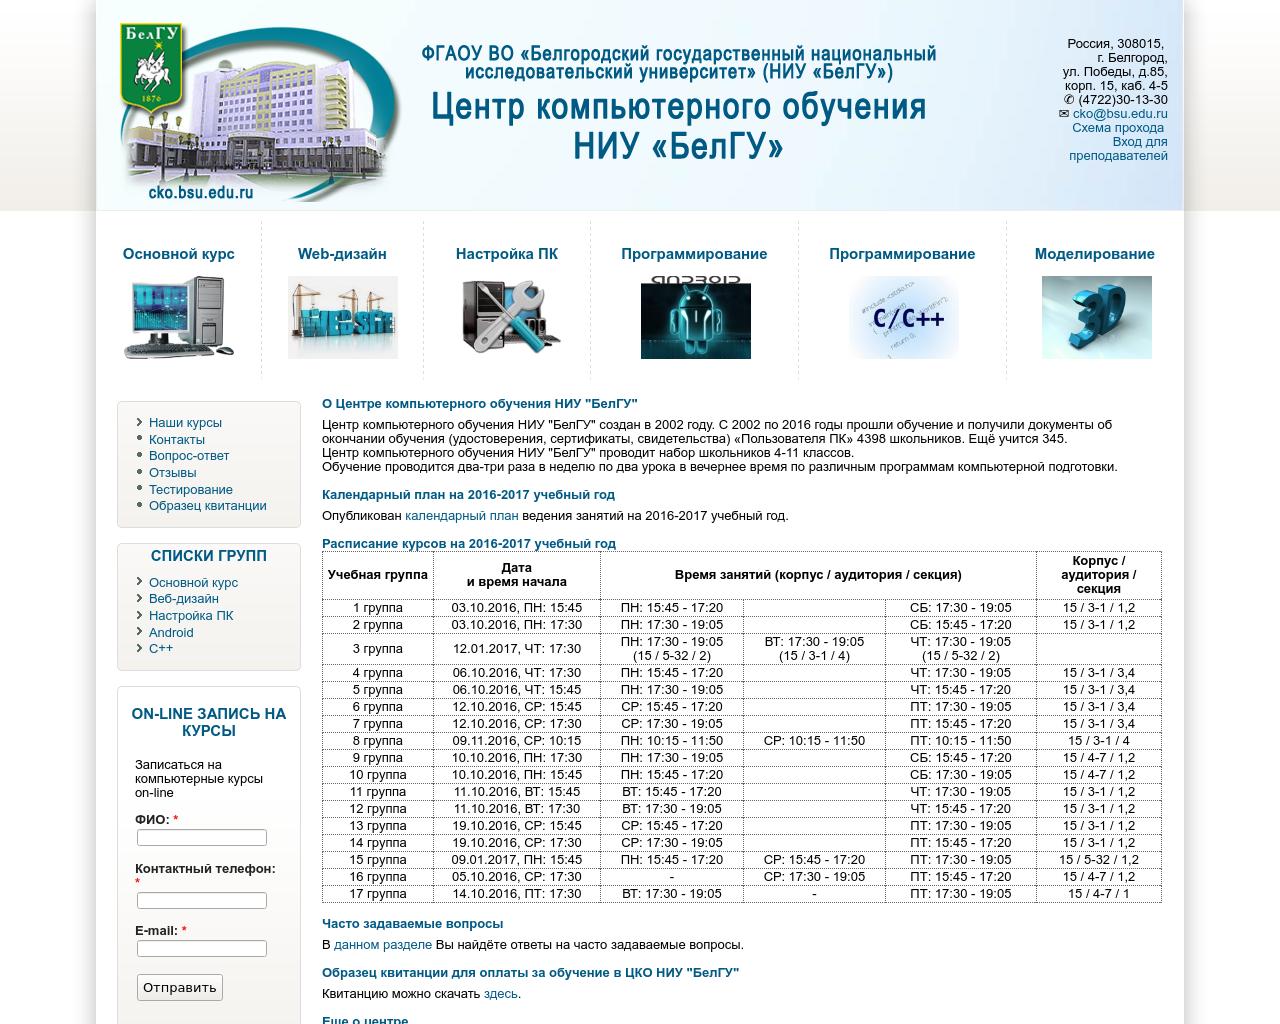 Изображение сайта 301330.ru в разрешении 1280x1024